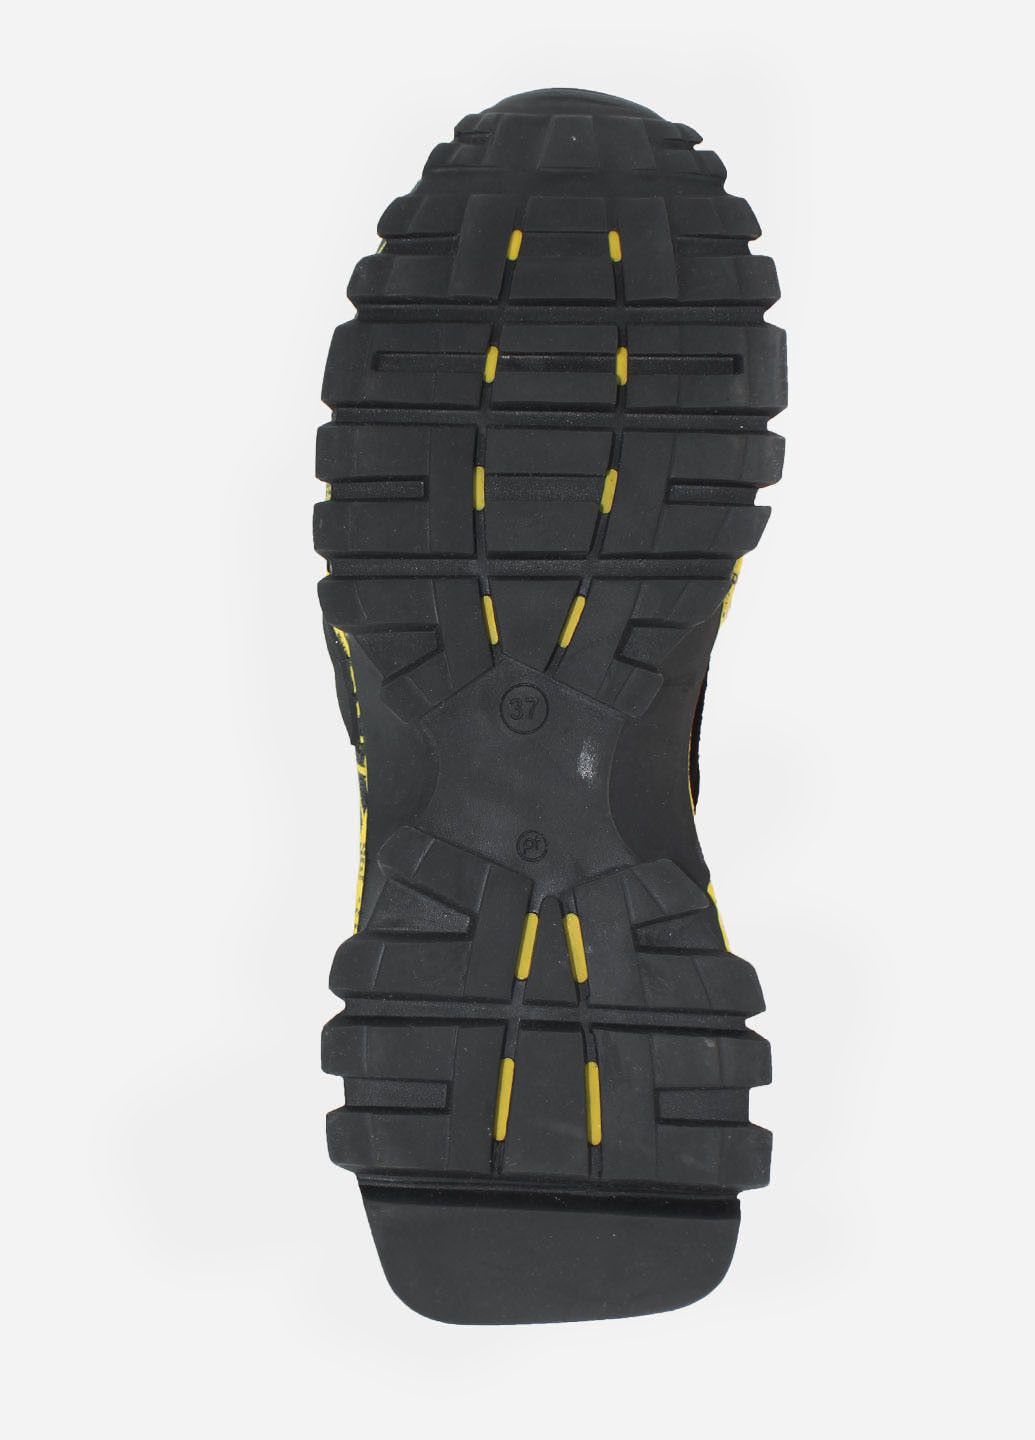 Черные демисезонные кроссовки rw549-7 черный-жёлтый Wings